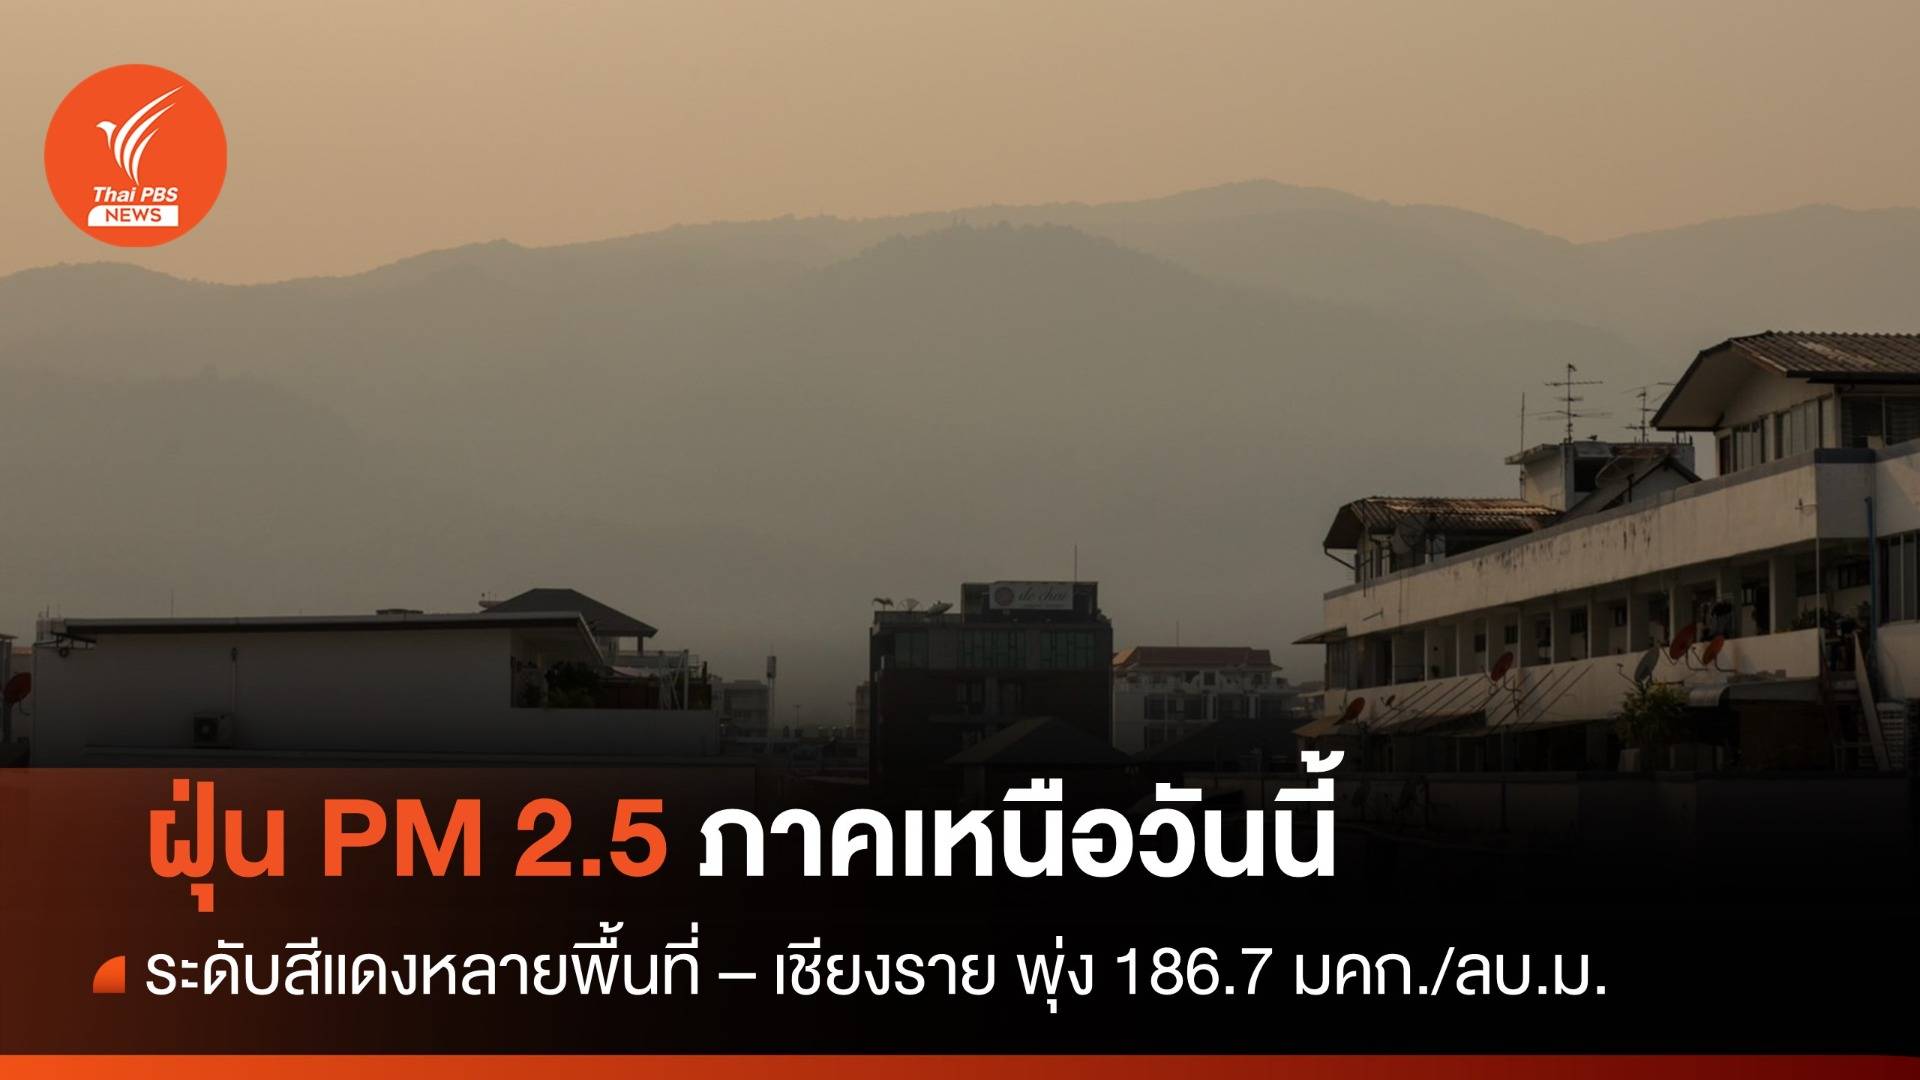 ฝุ่น PM 2.5 ภาคเหนือระดับสีแดงหลายพื้นที่ - เชียงรายพุ่ง 186.7 มคก./ลบ.ม.